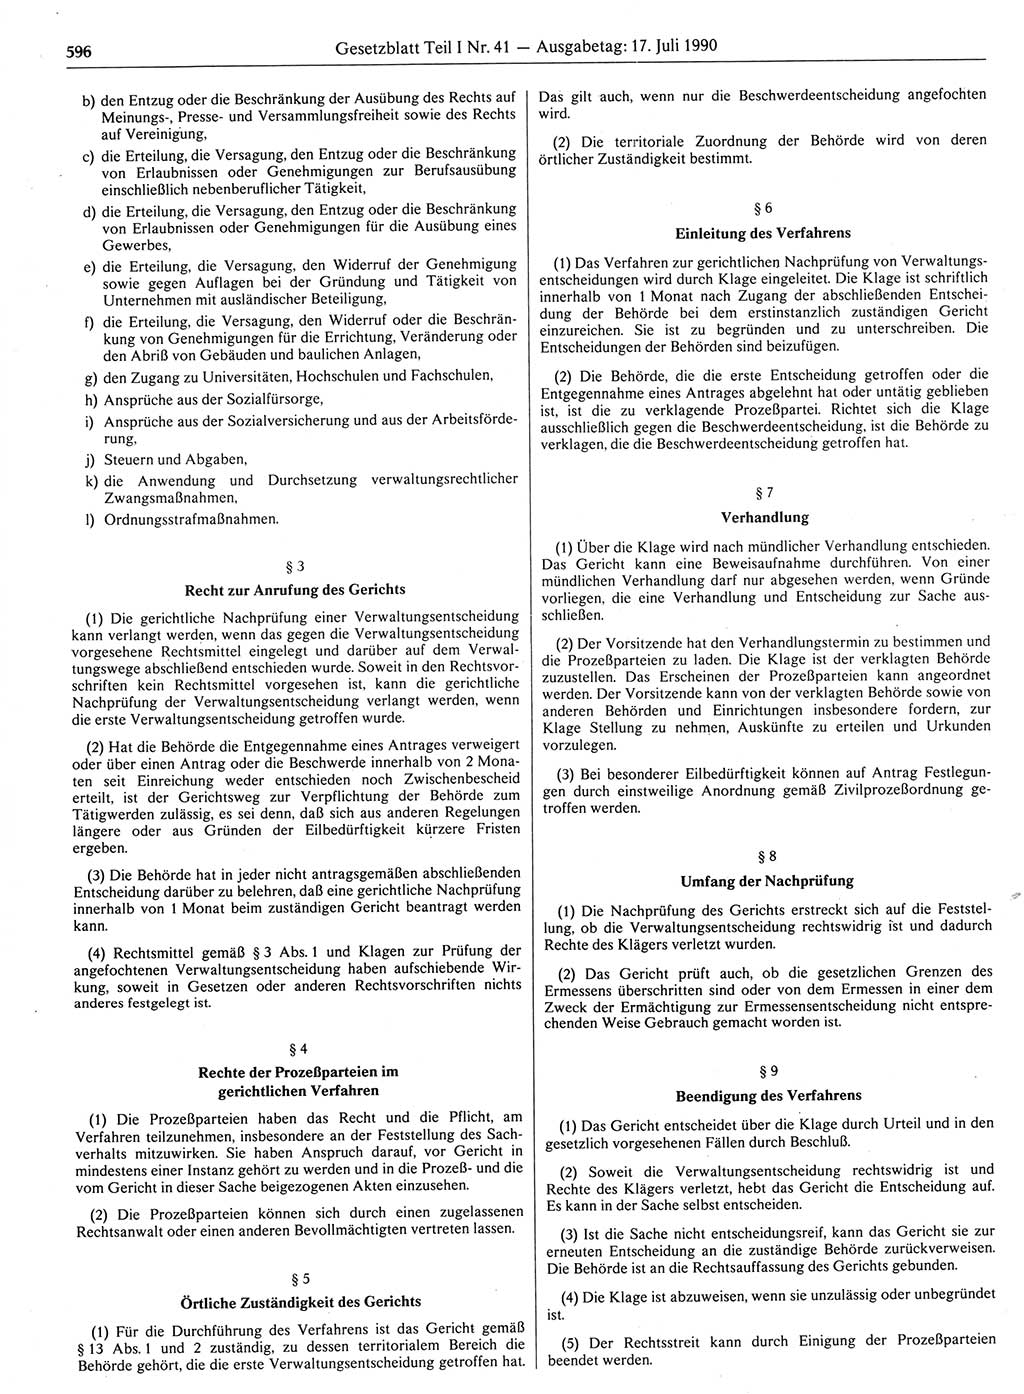 Gesetzblatt (GBl.) der Deutschen Demokratischen Republik (DDR) Teil Ⅰ 1990, Seite 596 (GBl. DDR Ⅰ 1990, S. 596)